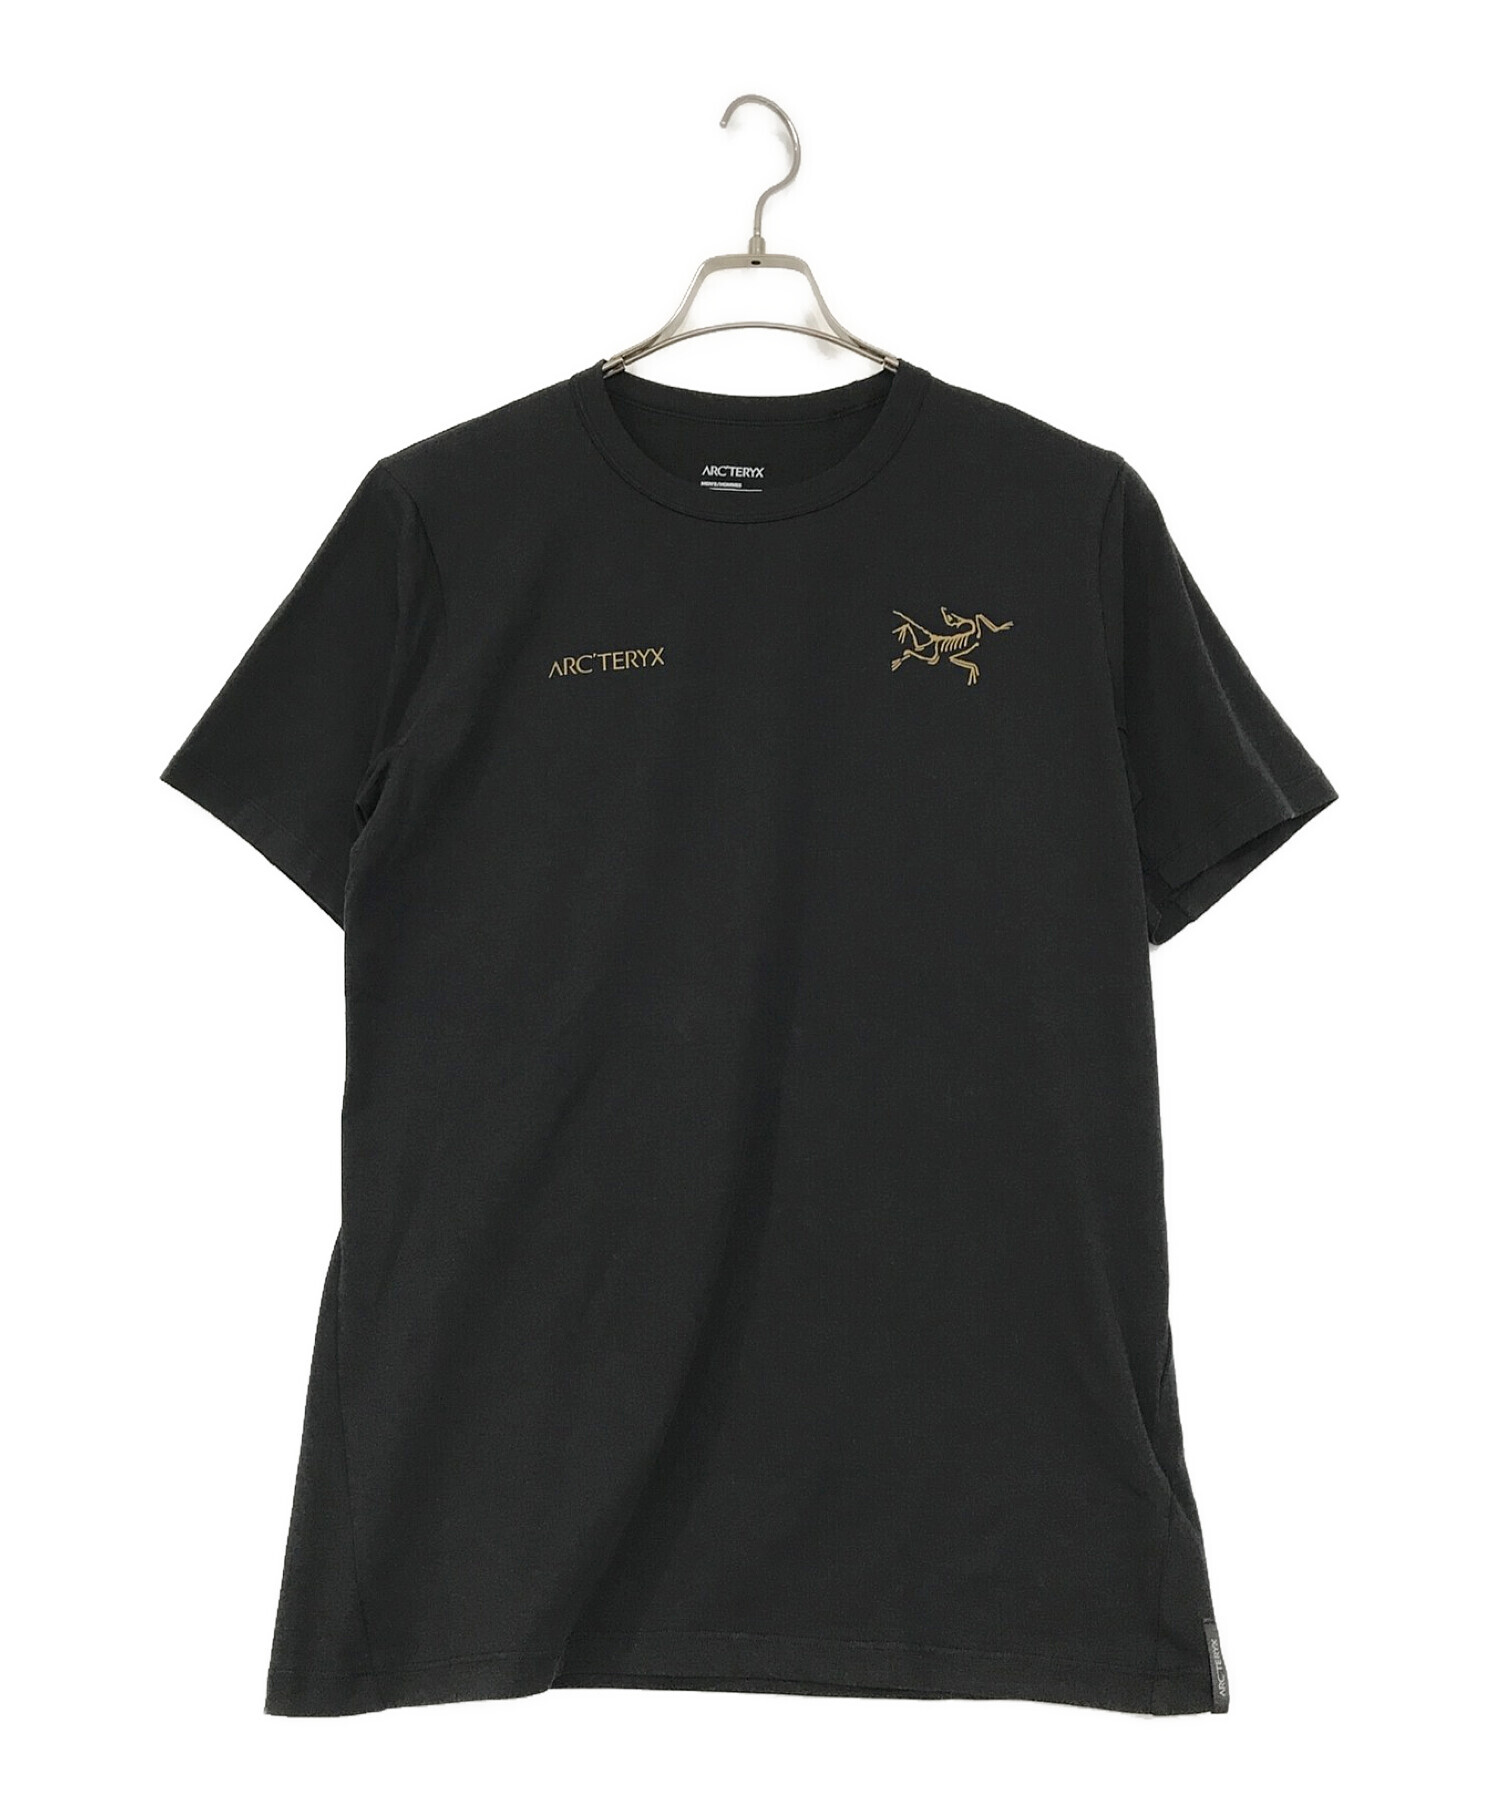 ARC'TERYX (アークテリクス) キャプティブ スプリット Tシャツ ブラック サイズ:M